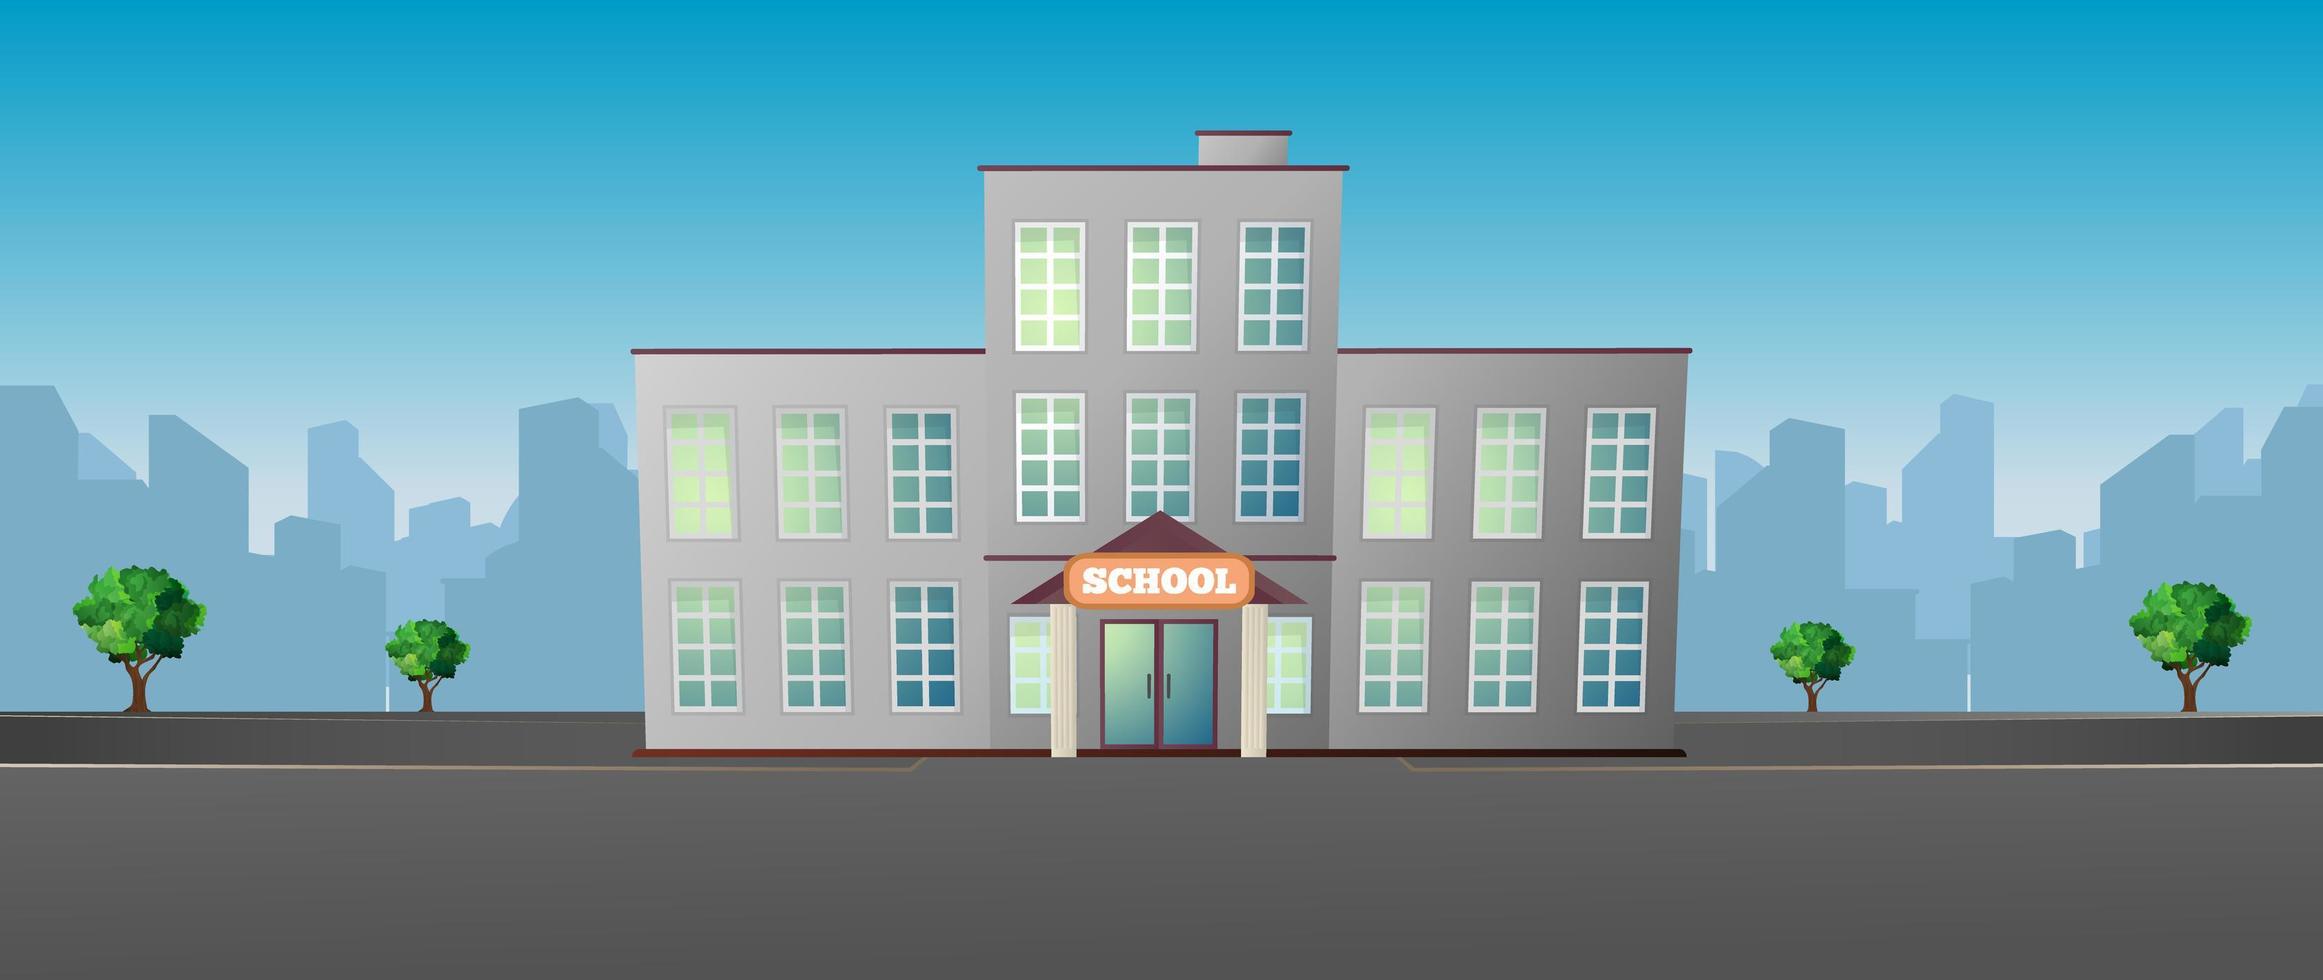 Schule in der Stadtvektorillustration. vektor